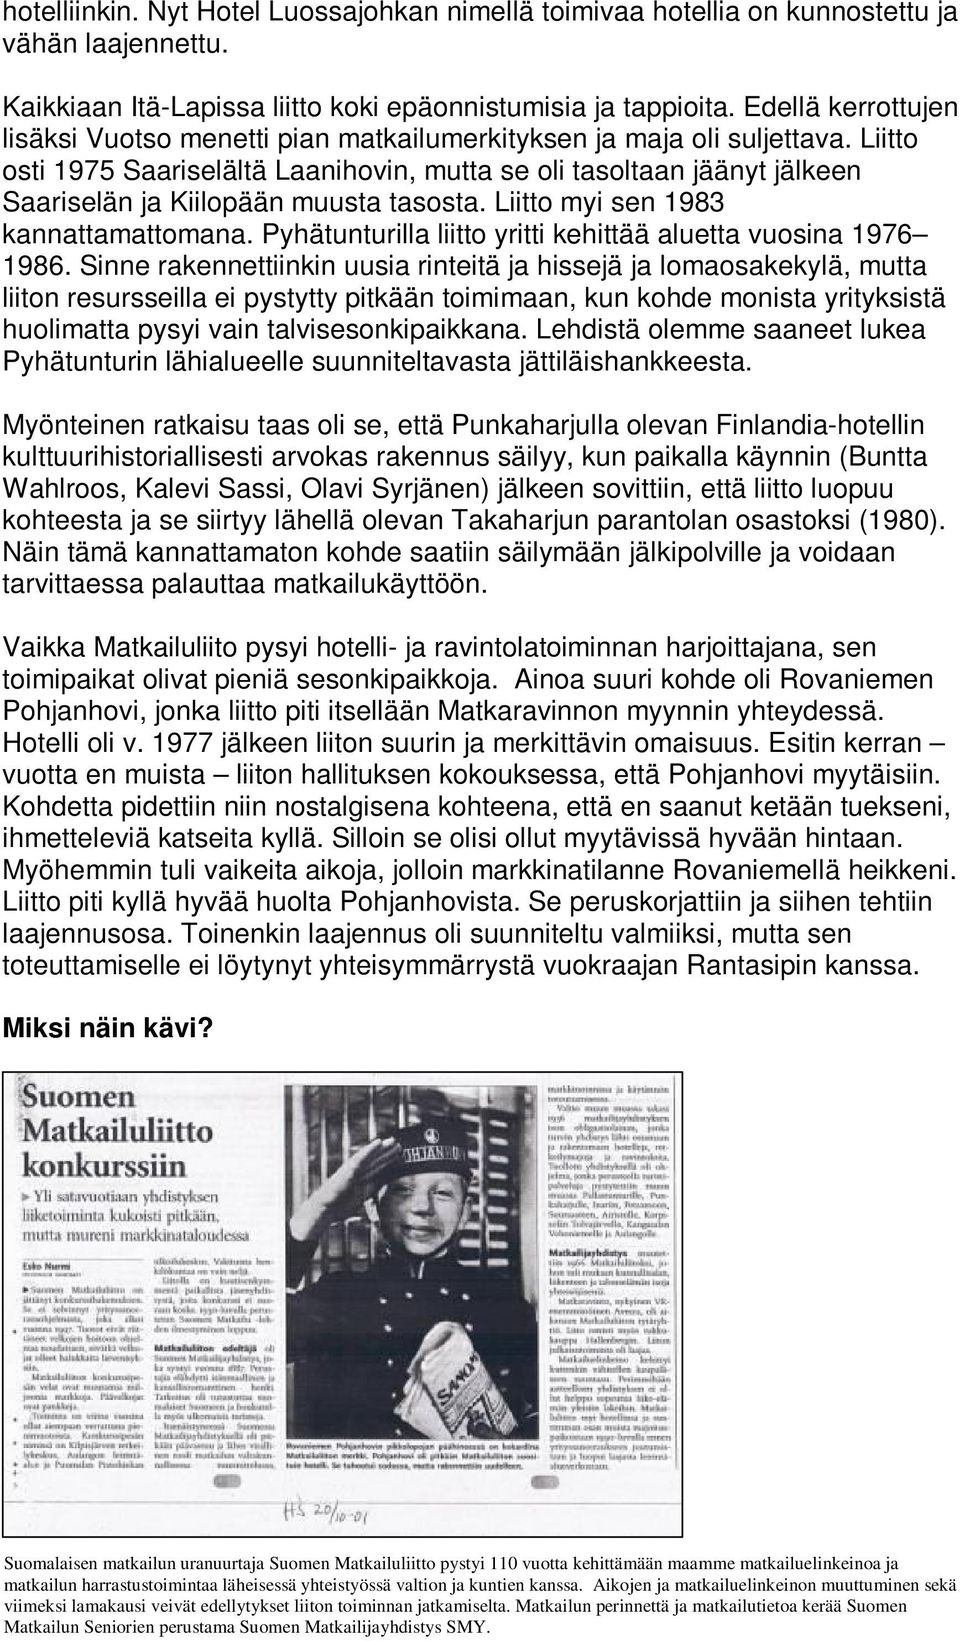 Liitto osti 1975 Saariselältä Laanihovin, mutta se oli tasoltaan jäänyt jälkeen Saariselän ja Kiilopään muusta tasosta. Liitto myi sen 1983 kannattamattomana.